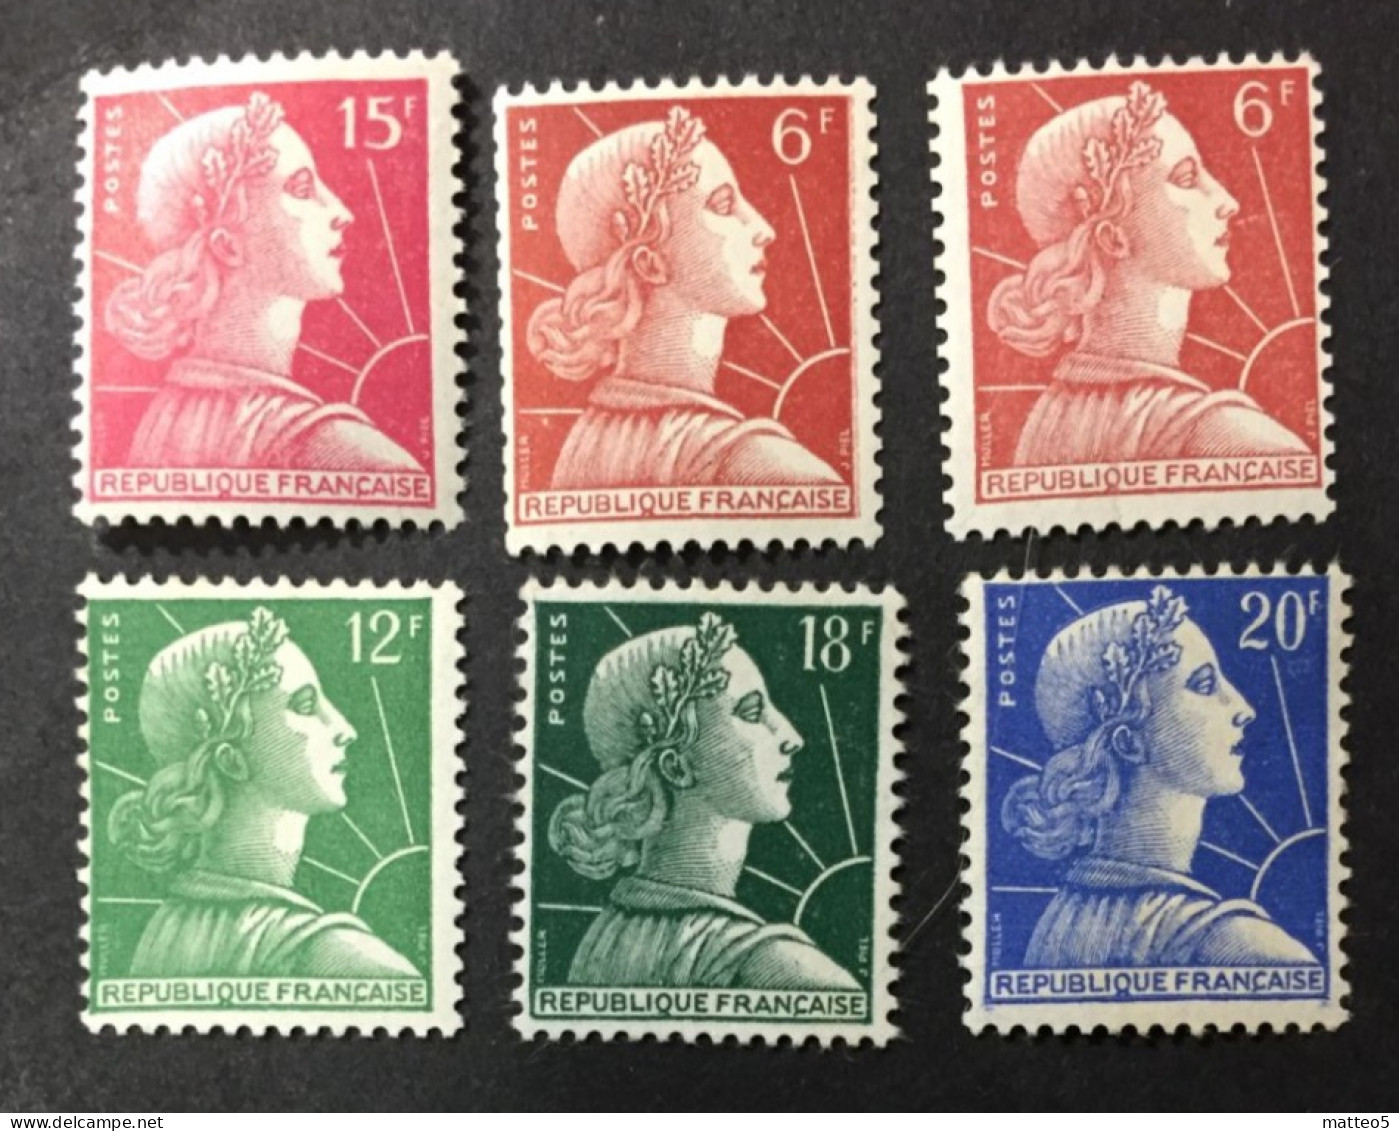 1955 /59  France - Liberty - Marianne De Muller - 6  Stamps Unused - 1955-1961 Marianne De Muller